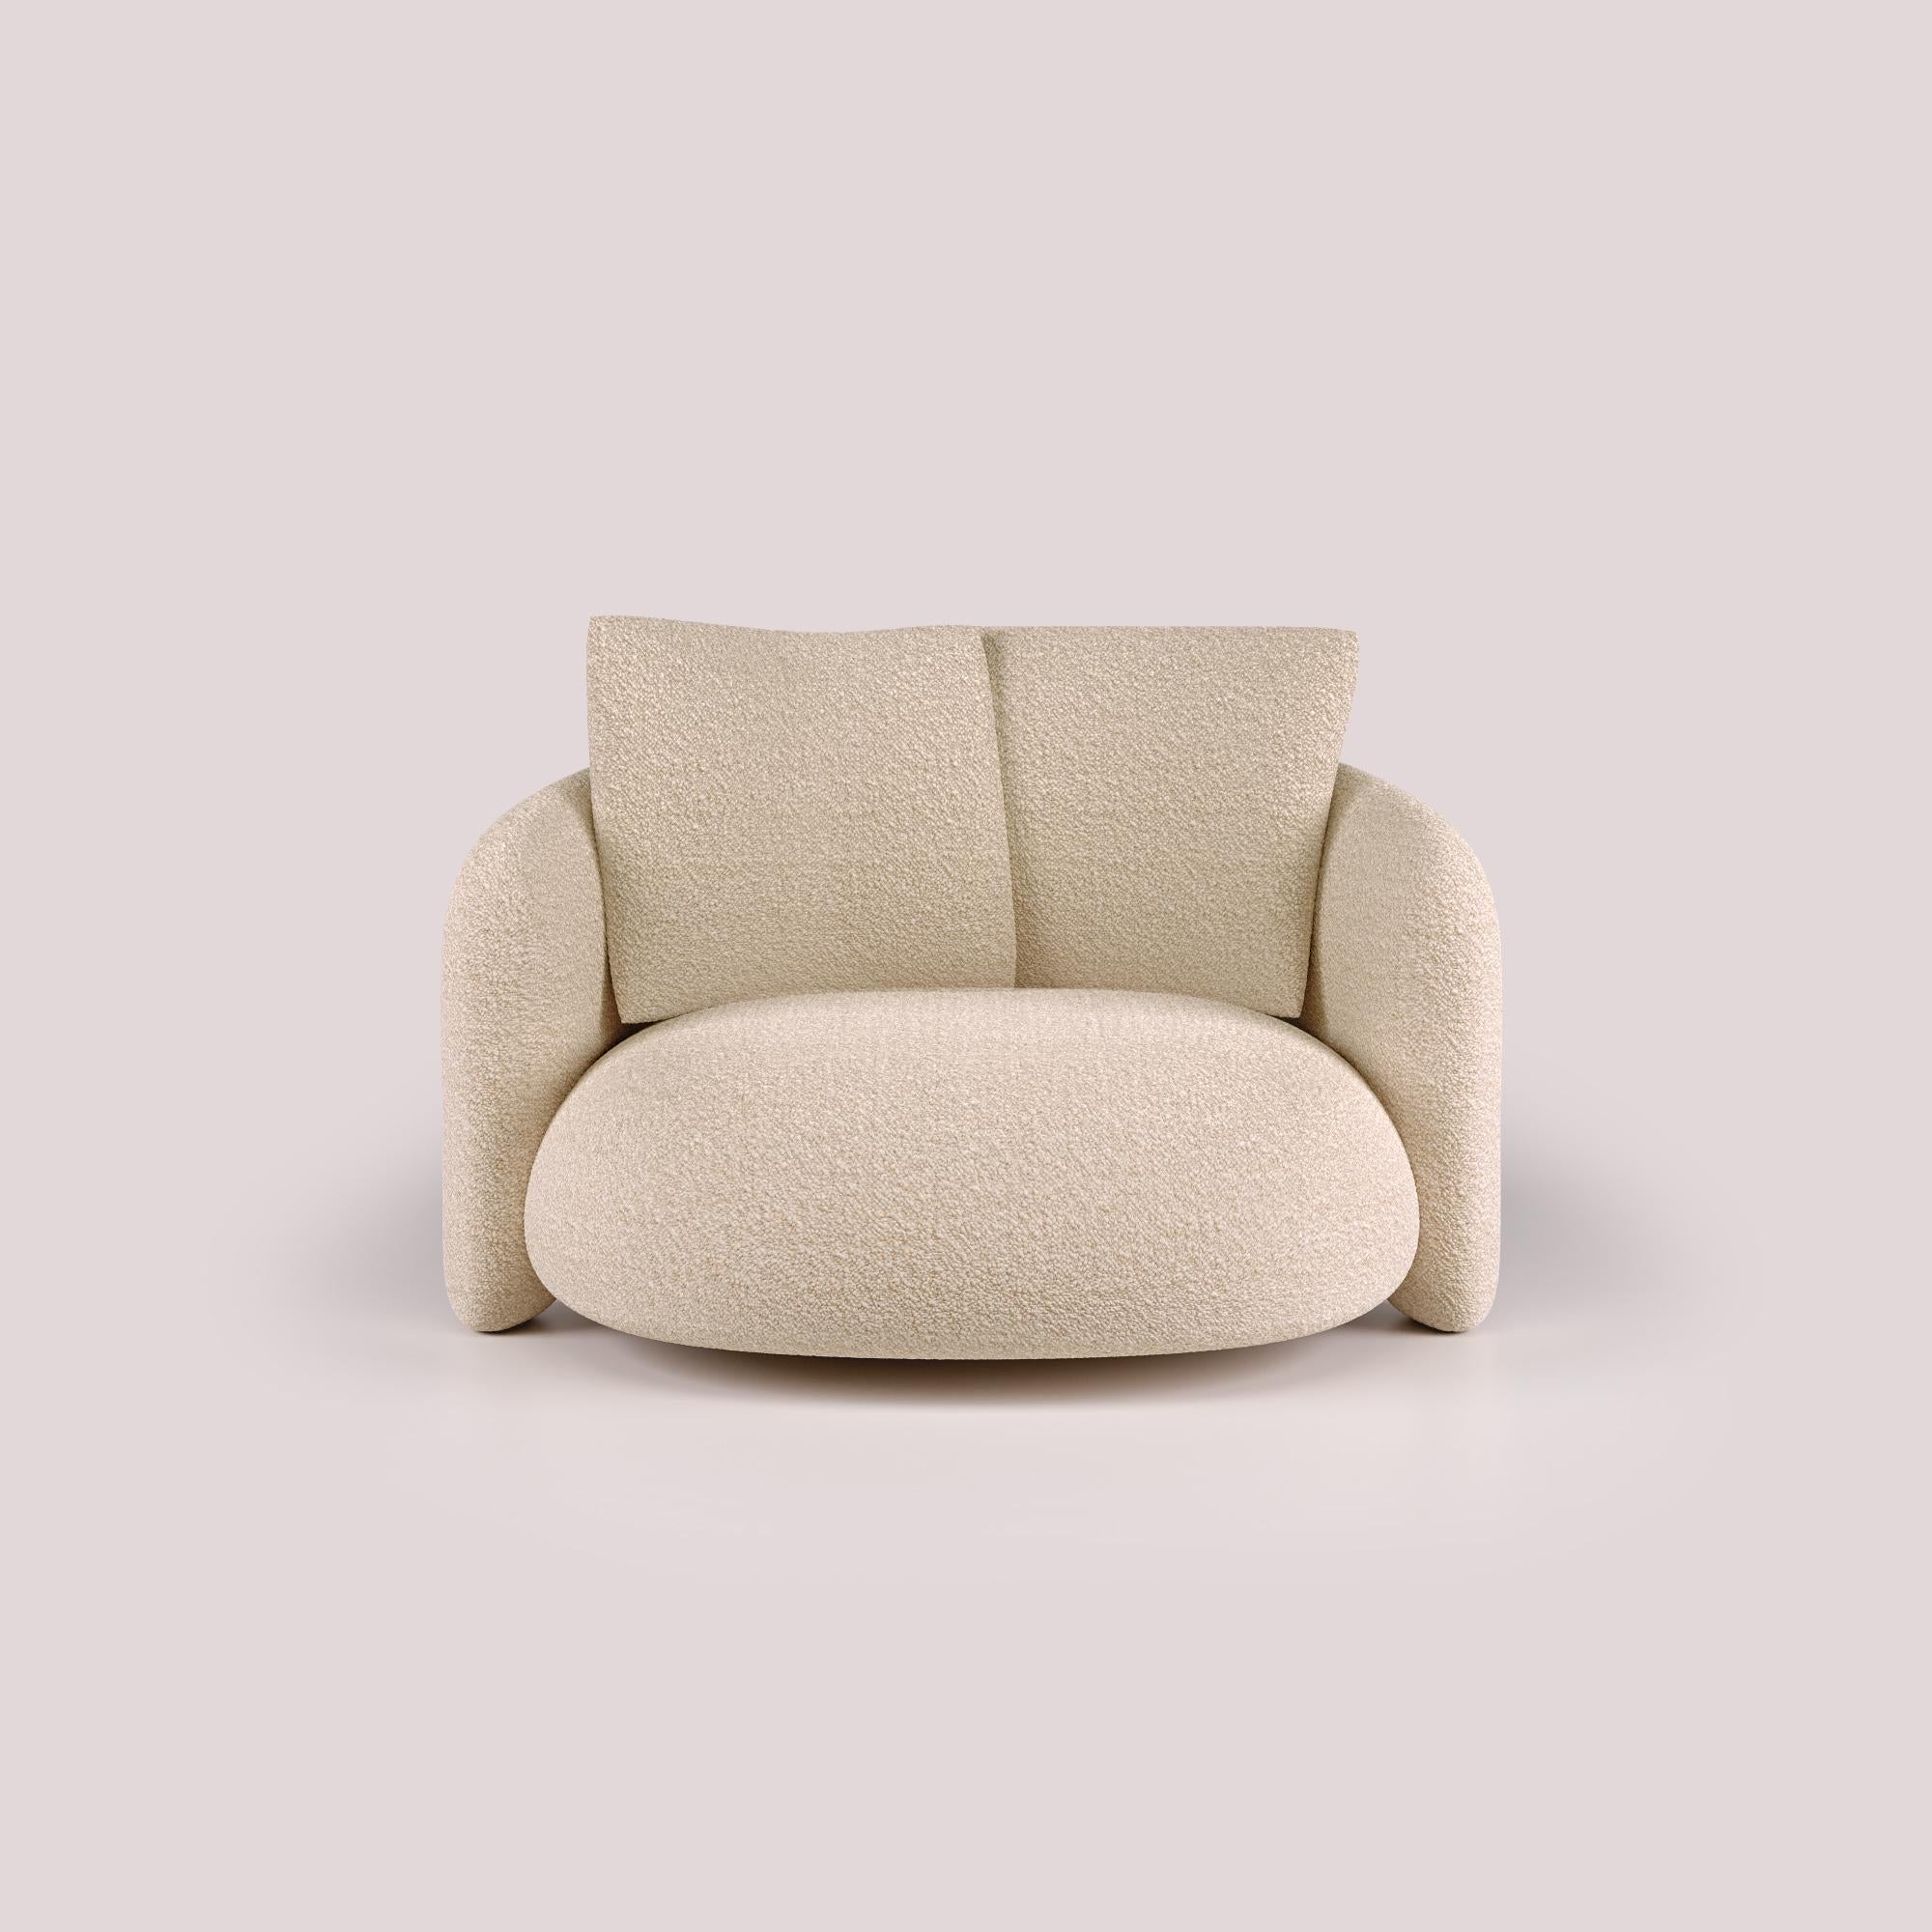 Expression de l'excellence du design moderne, le Bold Love Seat est un témoignage de l'art de vivre dans le luxe. Des décennies d'expertise en matière de design sont mises en valeur par une esthétique élégante et raffinée. Son design accueillant